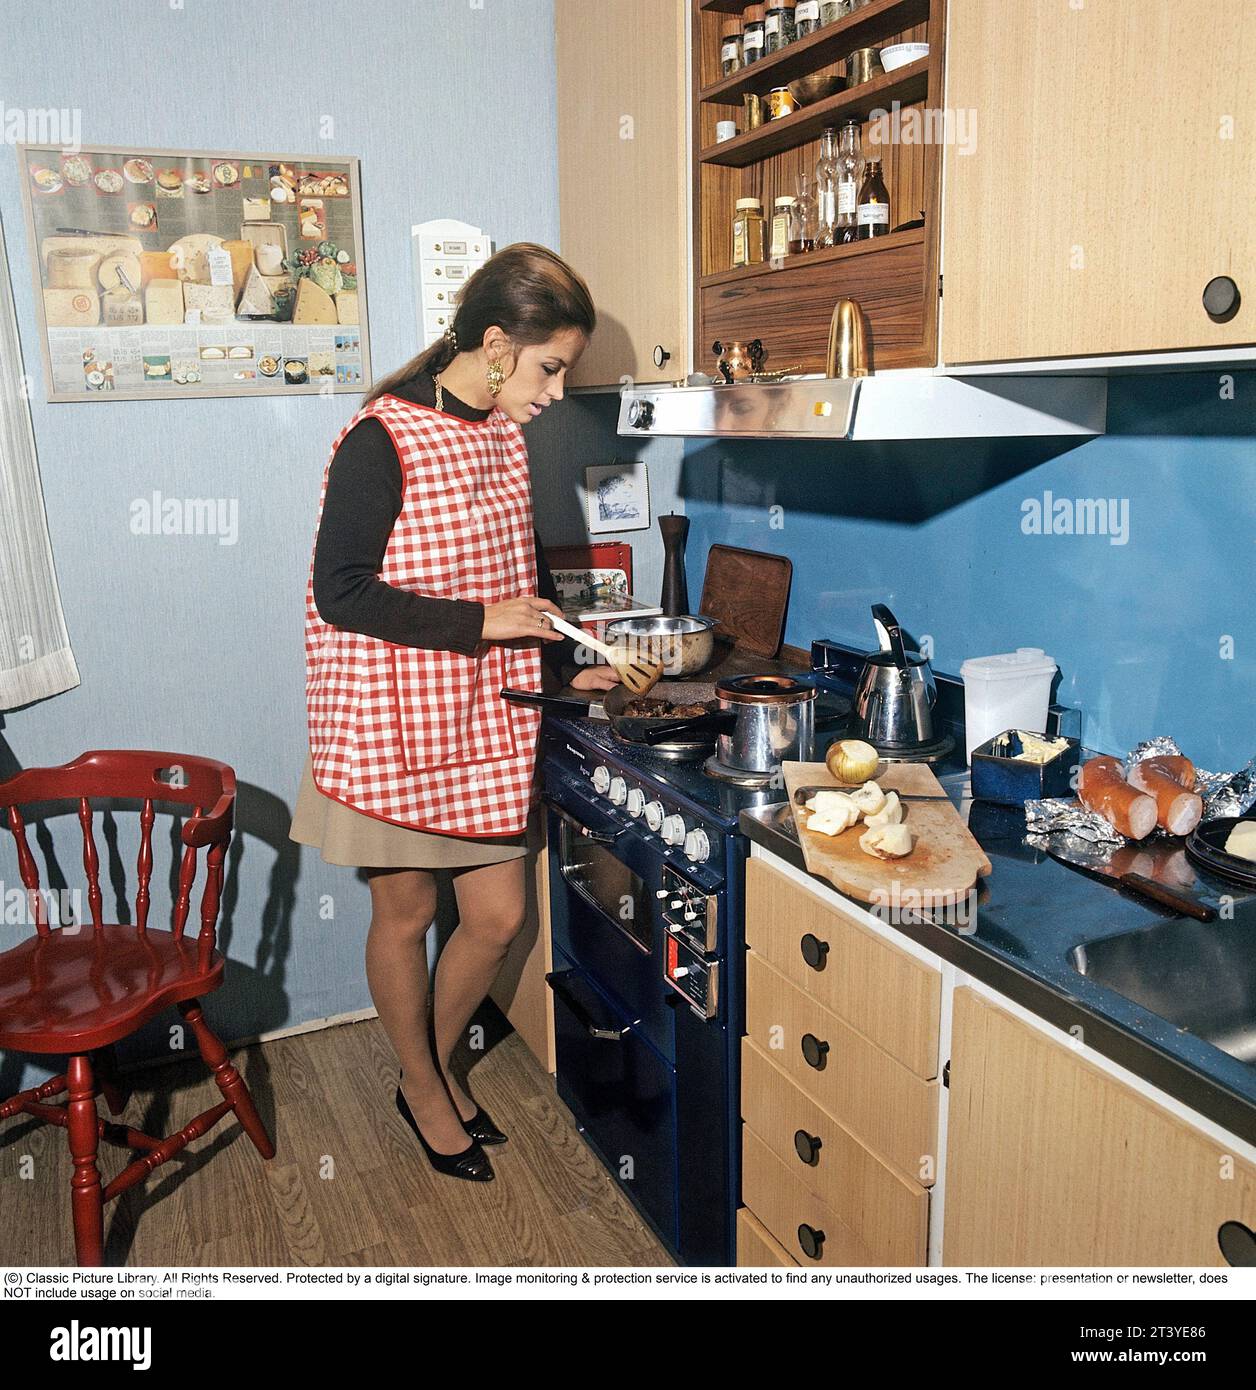 En la cocina de los años setenta. La actriz, cantante Lill-Babs Svensson, fotografiada en la cocina típica de los setenta cocinando una comida. Suecia 1972. A cargo de Kristoffersson Foto de stock